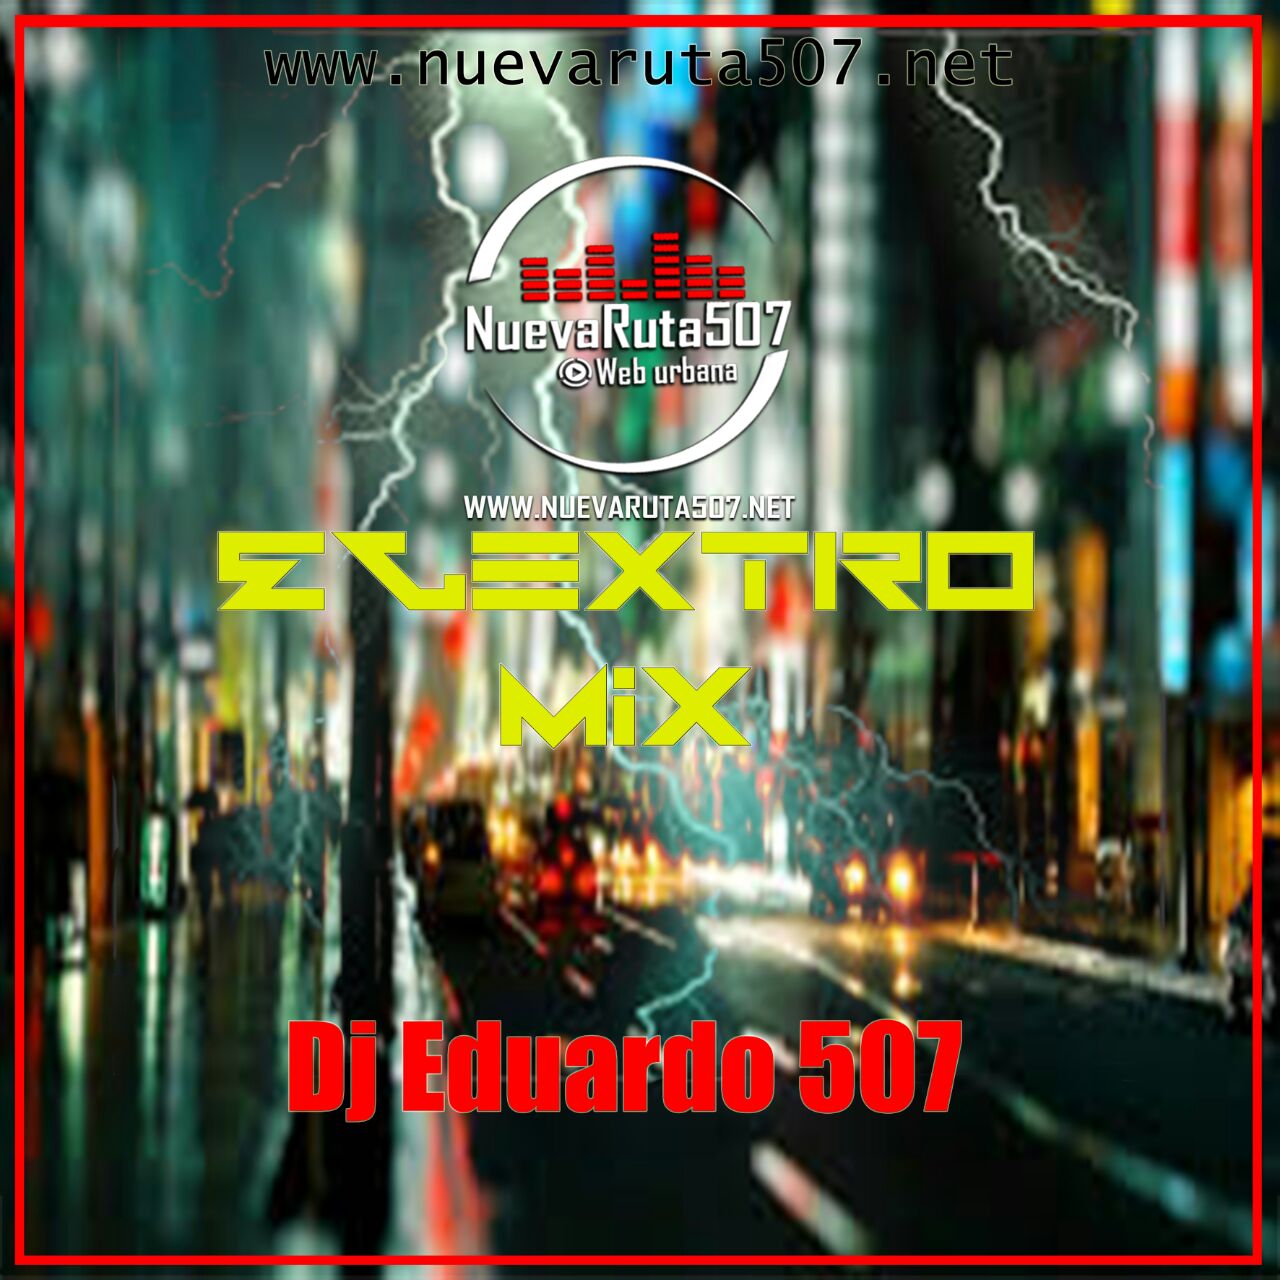 Dj Eduardo507 - Electro Mix.mp3